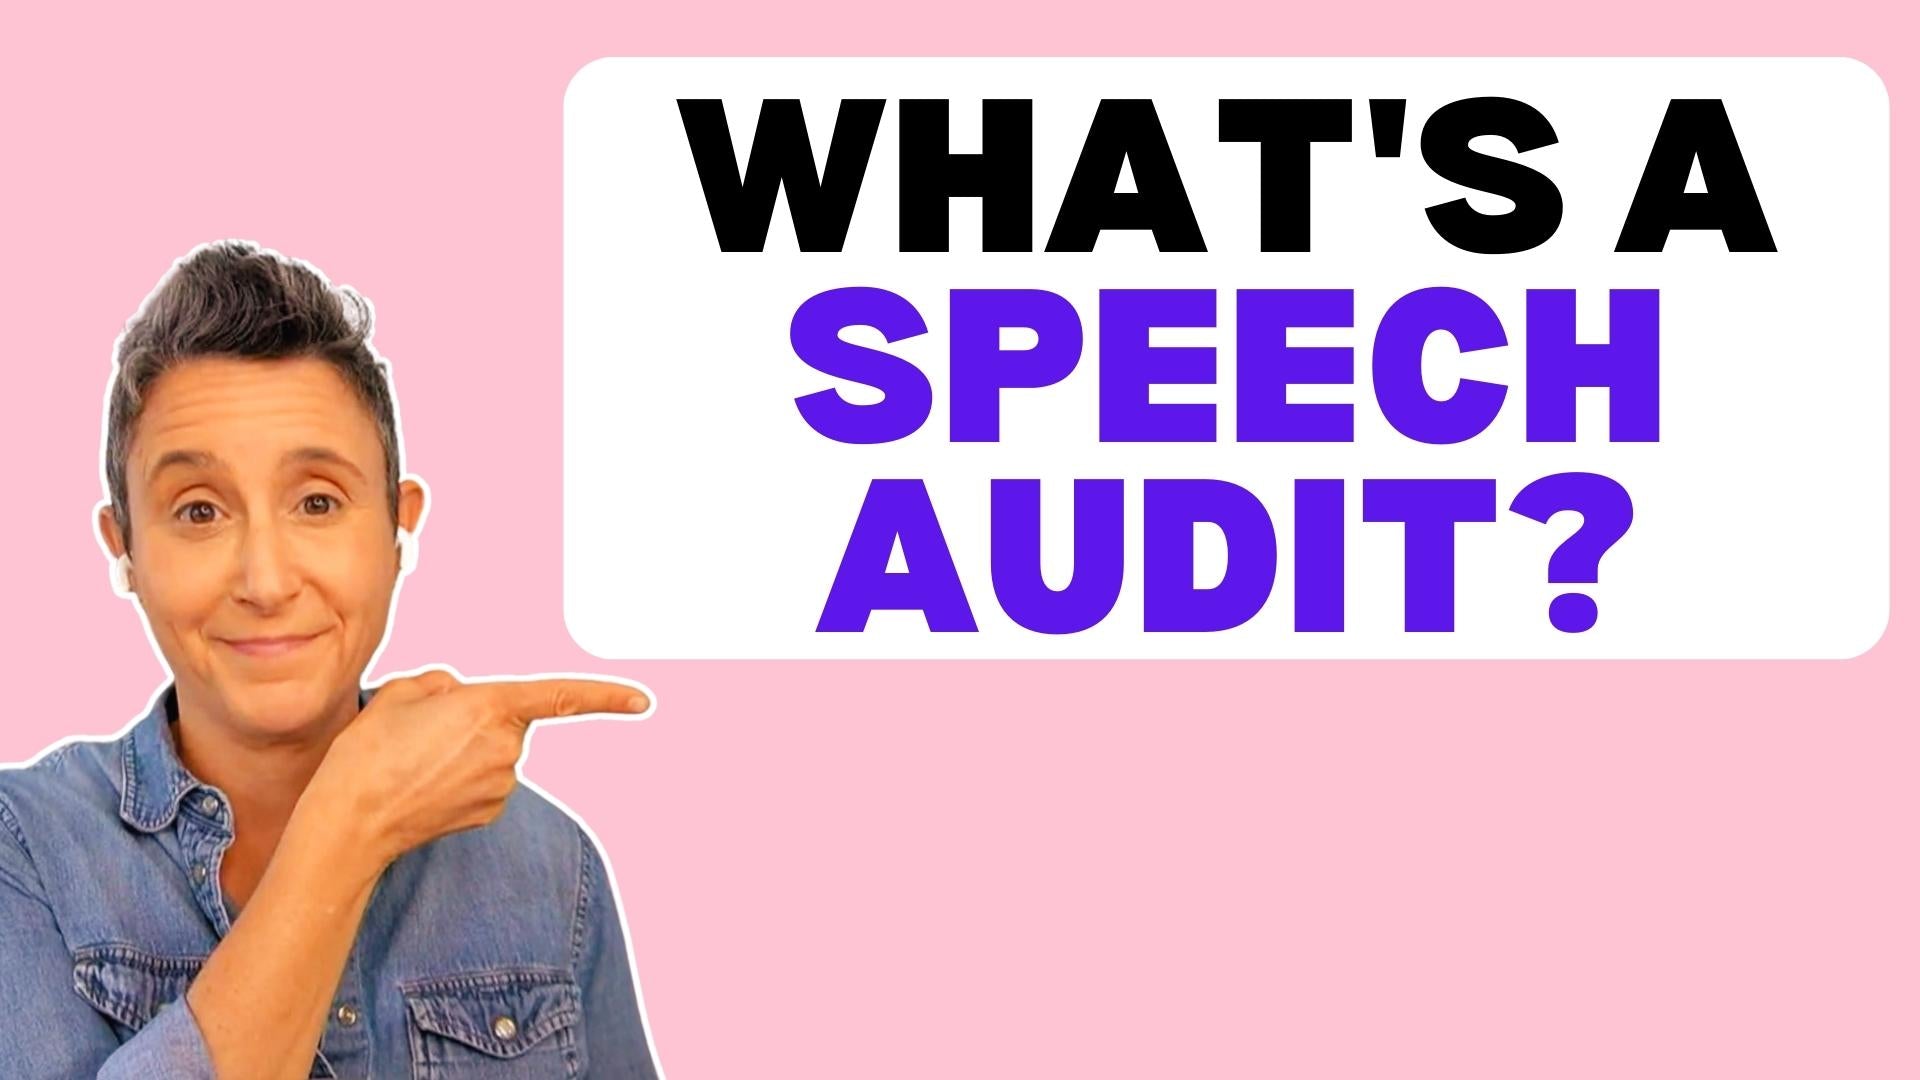 Load video: Wat is a speech audit?